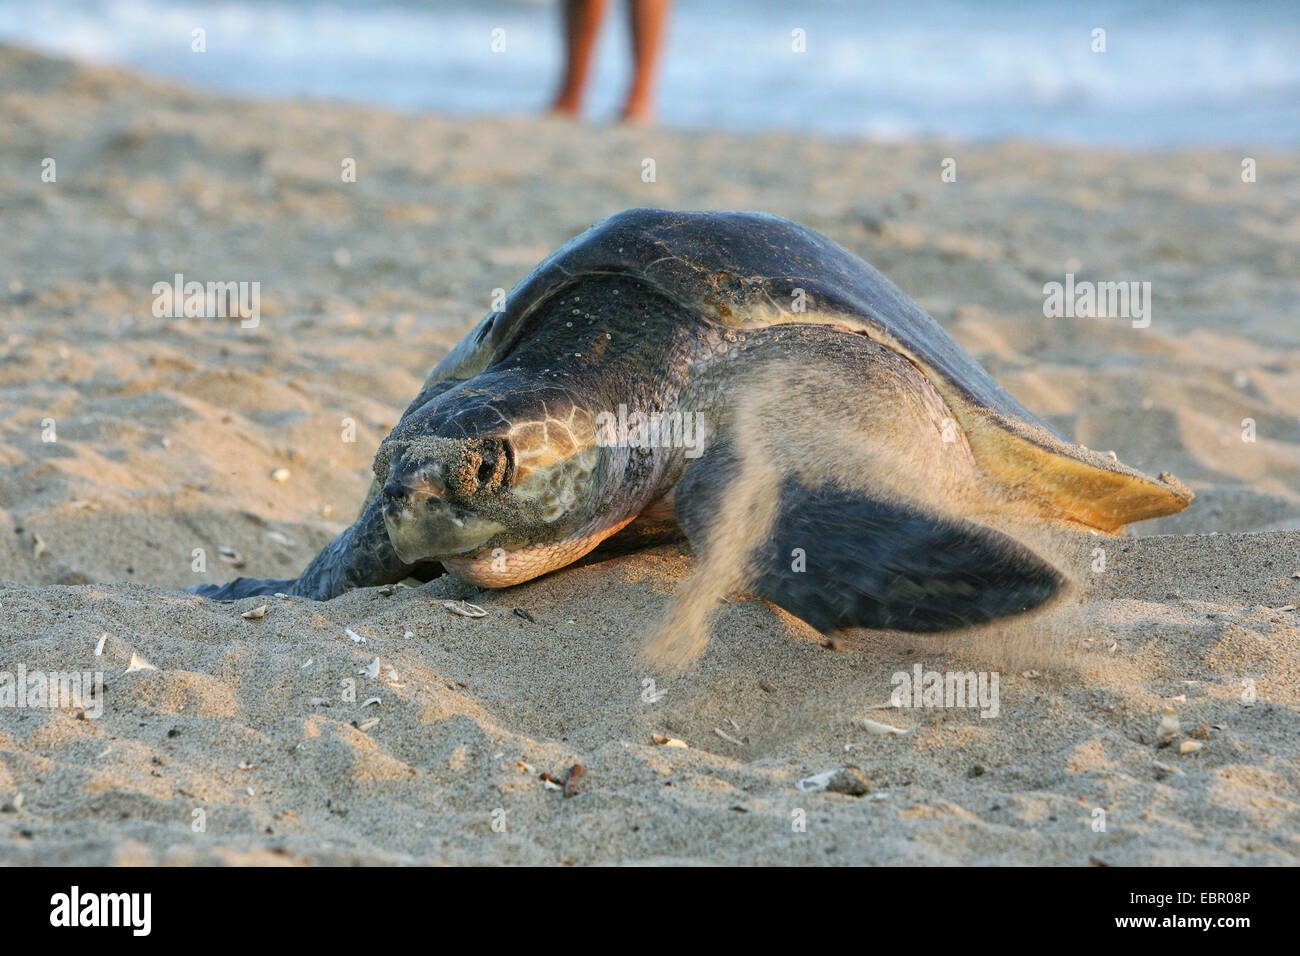 grüne Schildkröte, Turtle Rock, Fleisch Schildkröten (Chelonia Mydas), Schildkröte kriecht am Strand für Ei Ablagerung, Mexiko, Oaxaca Stockfoto